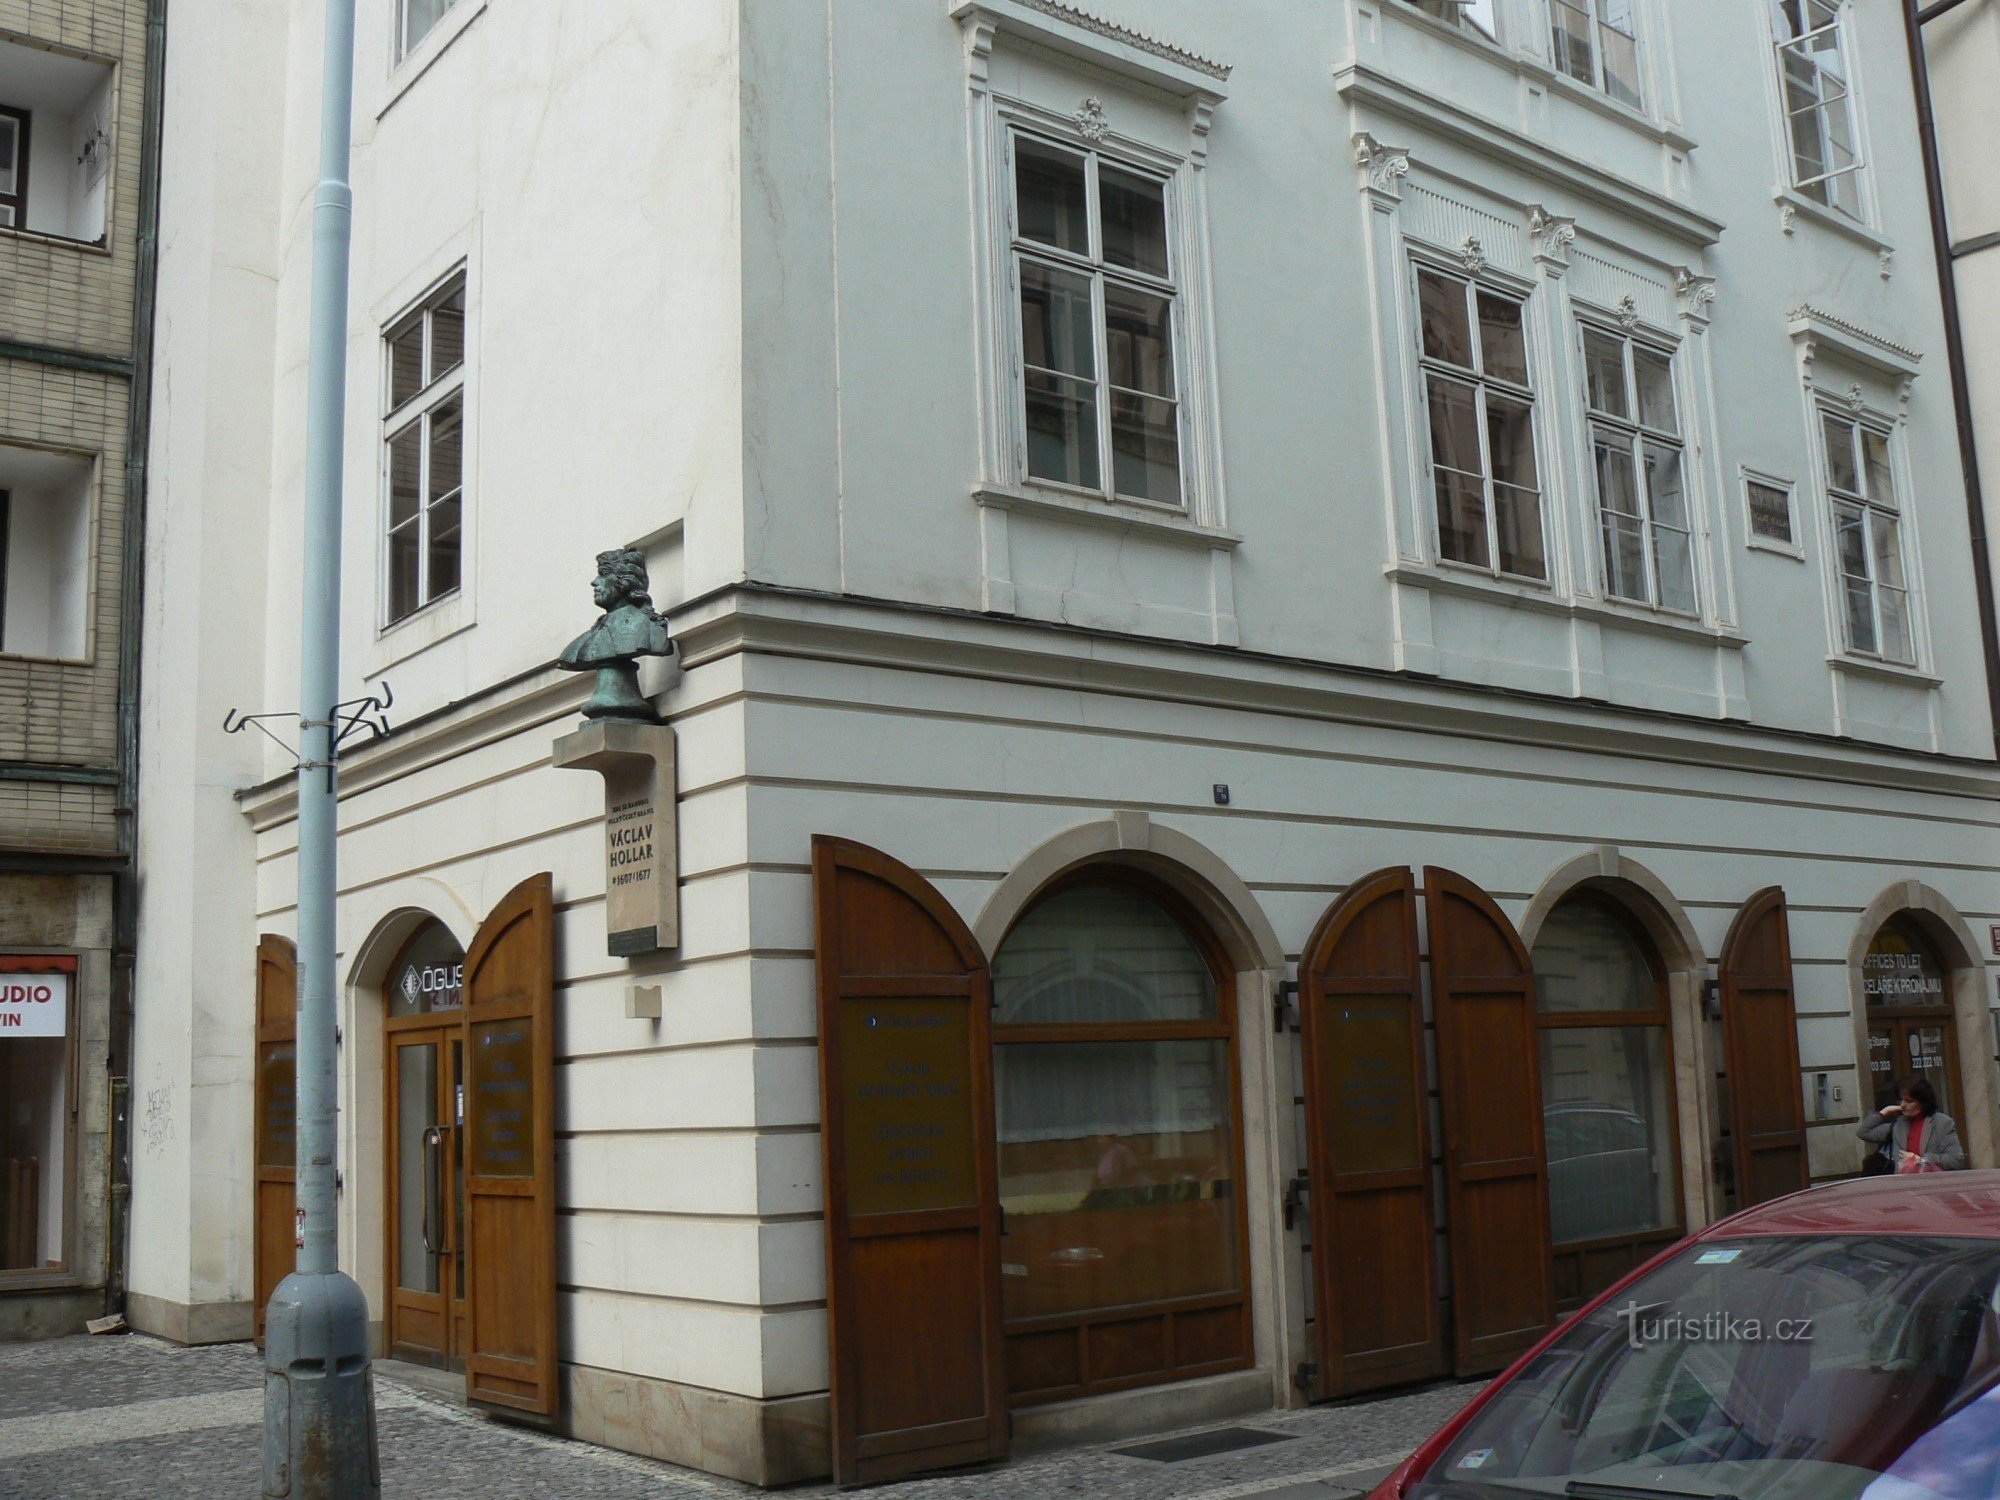 Václav Hollars fødested